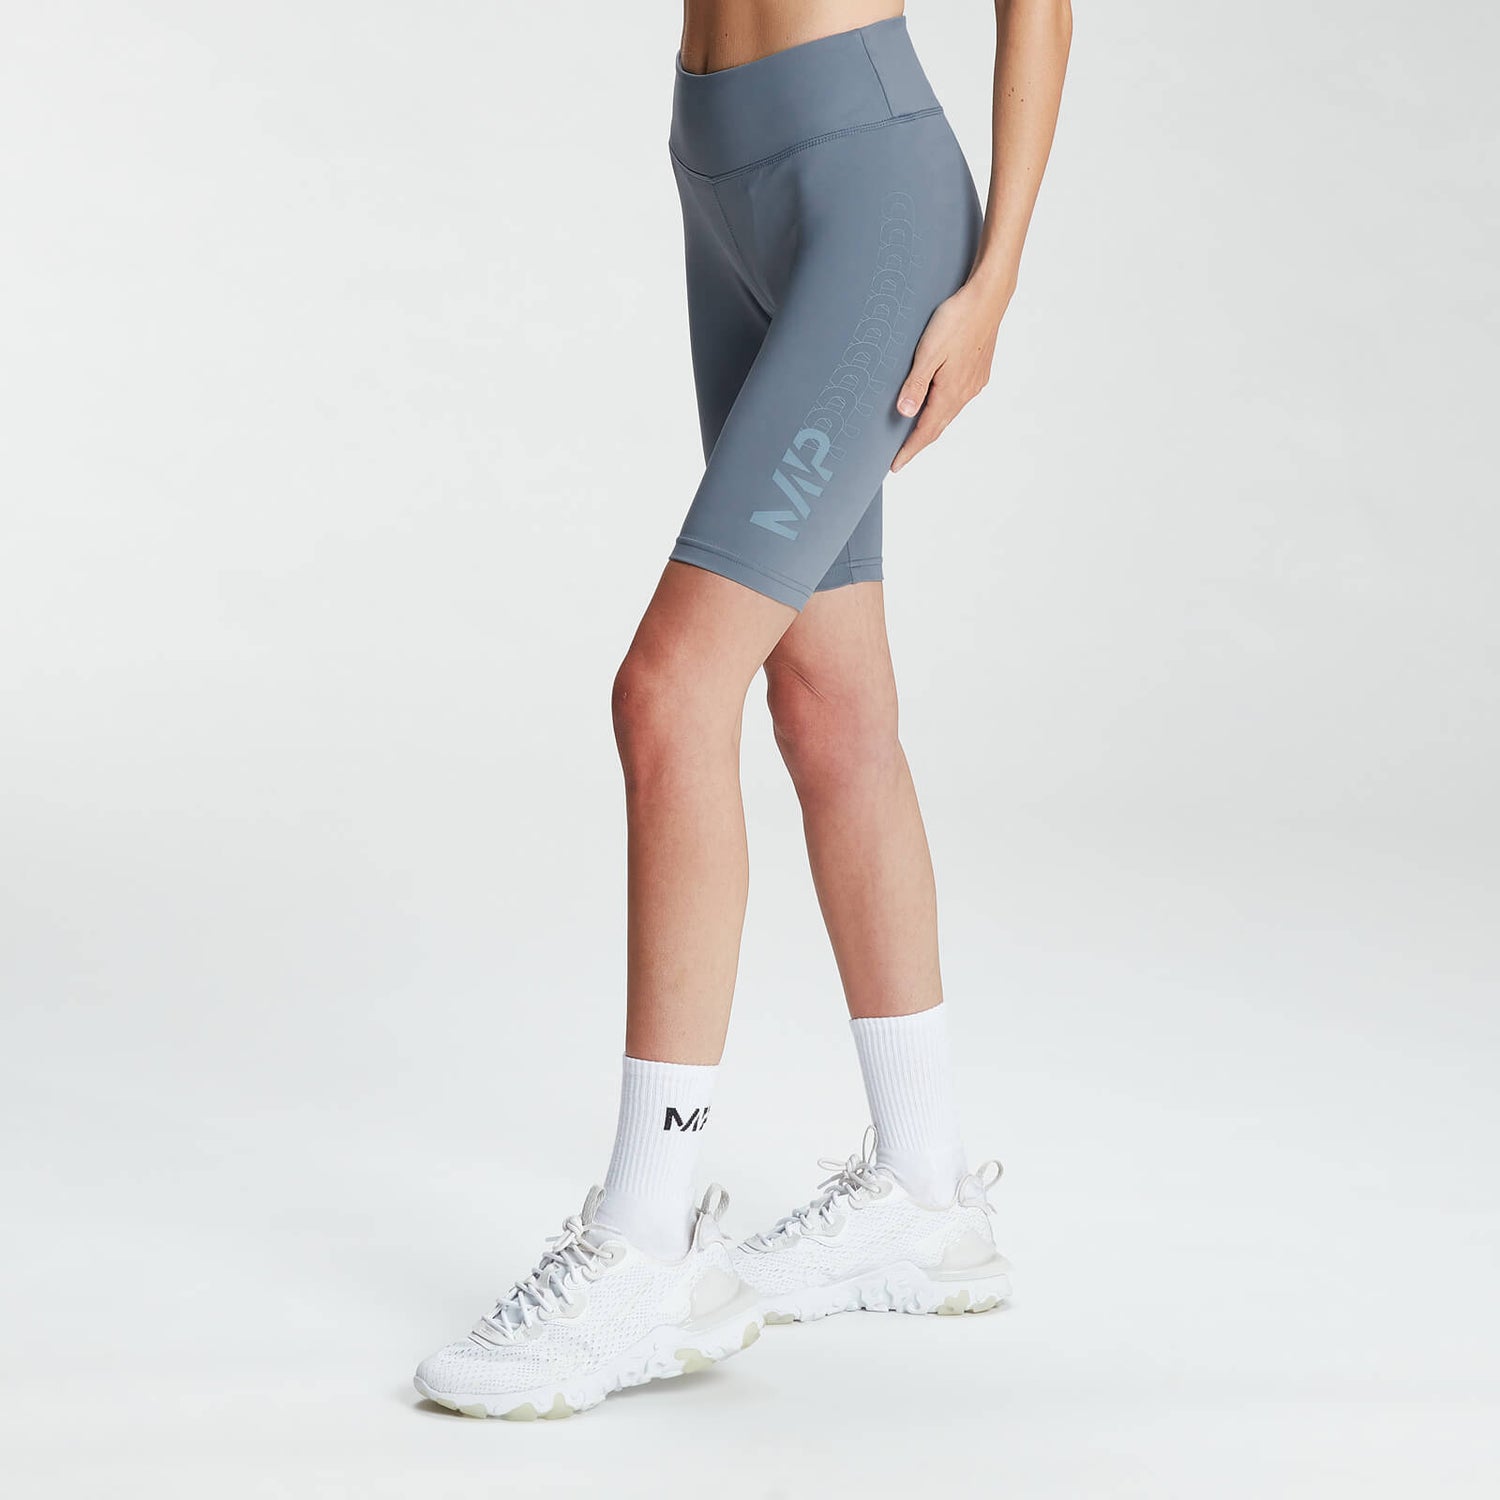 Pantalón corto de ciclismo con gráfico degradado para mujer de MP - Galaxy - XS